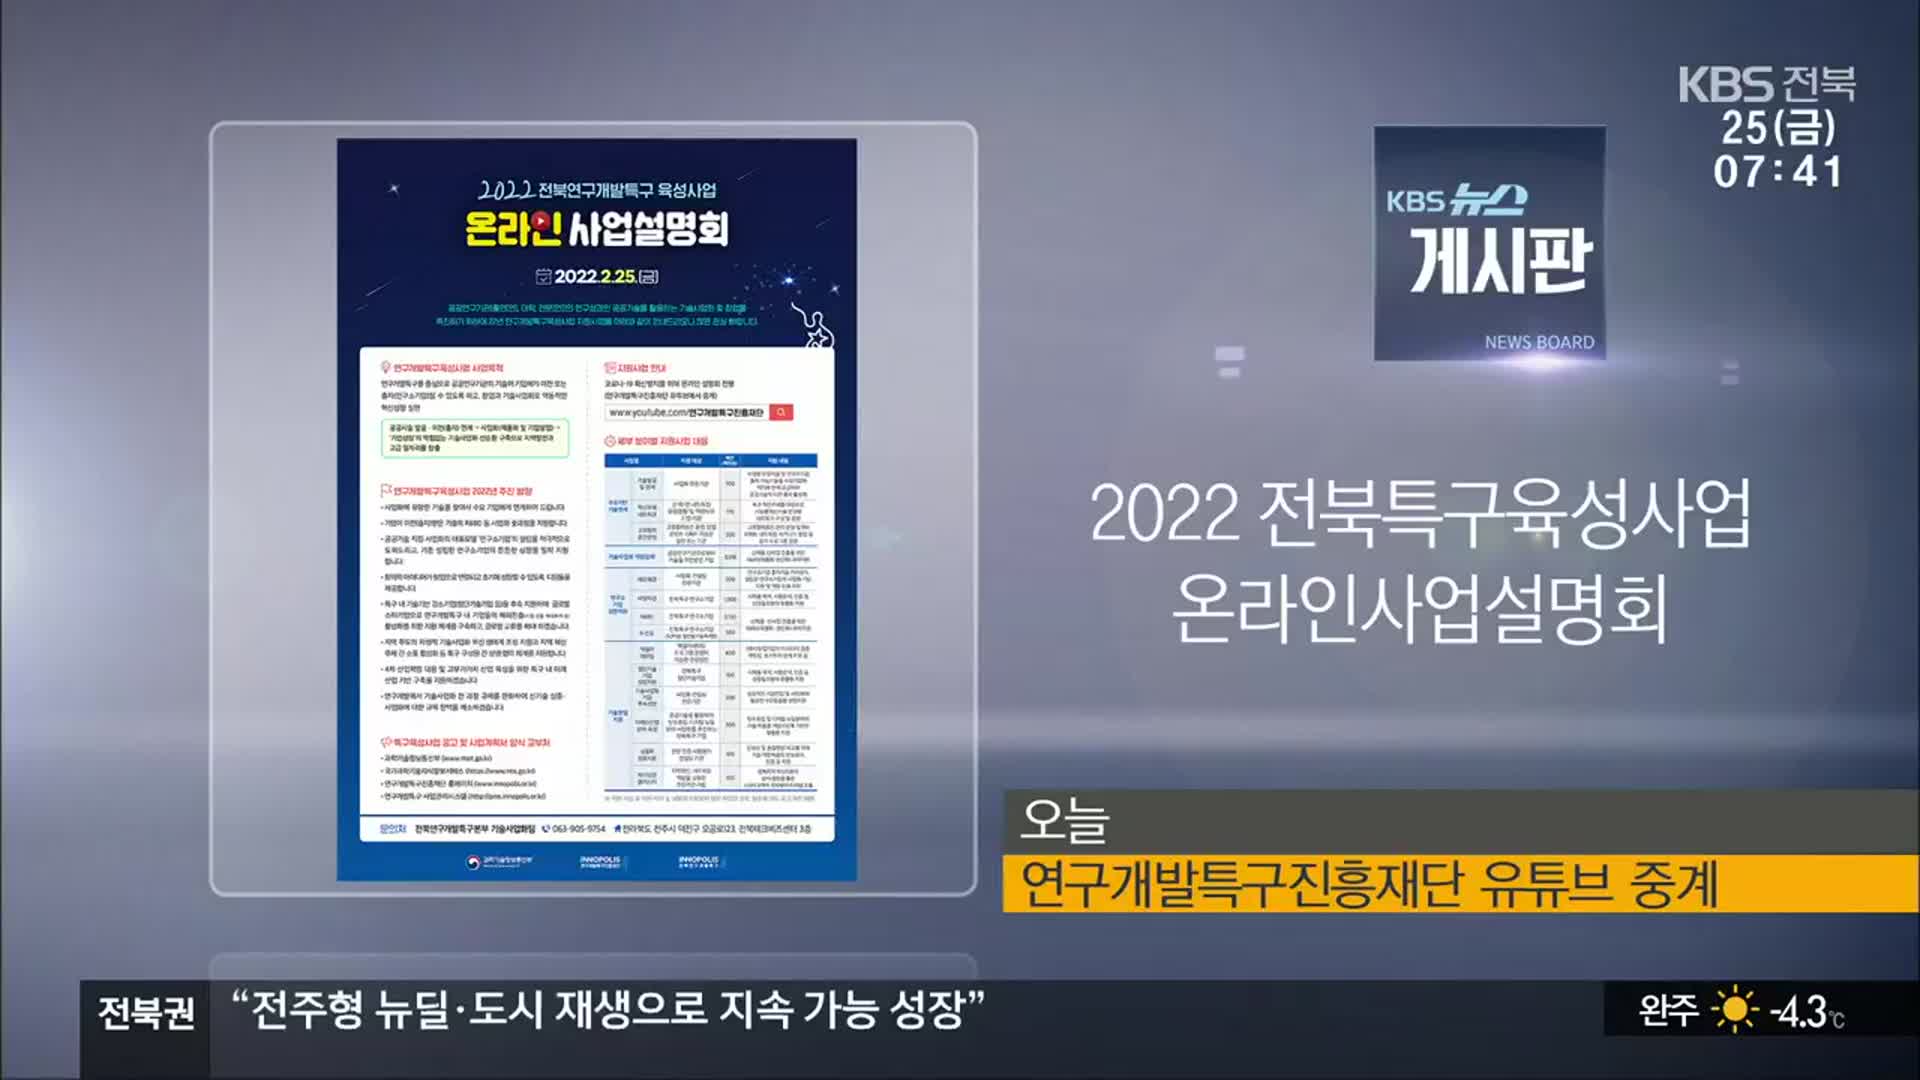 [게시판] 2022 전북특구육성사업 온라인사업설명회 외